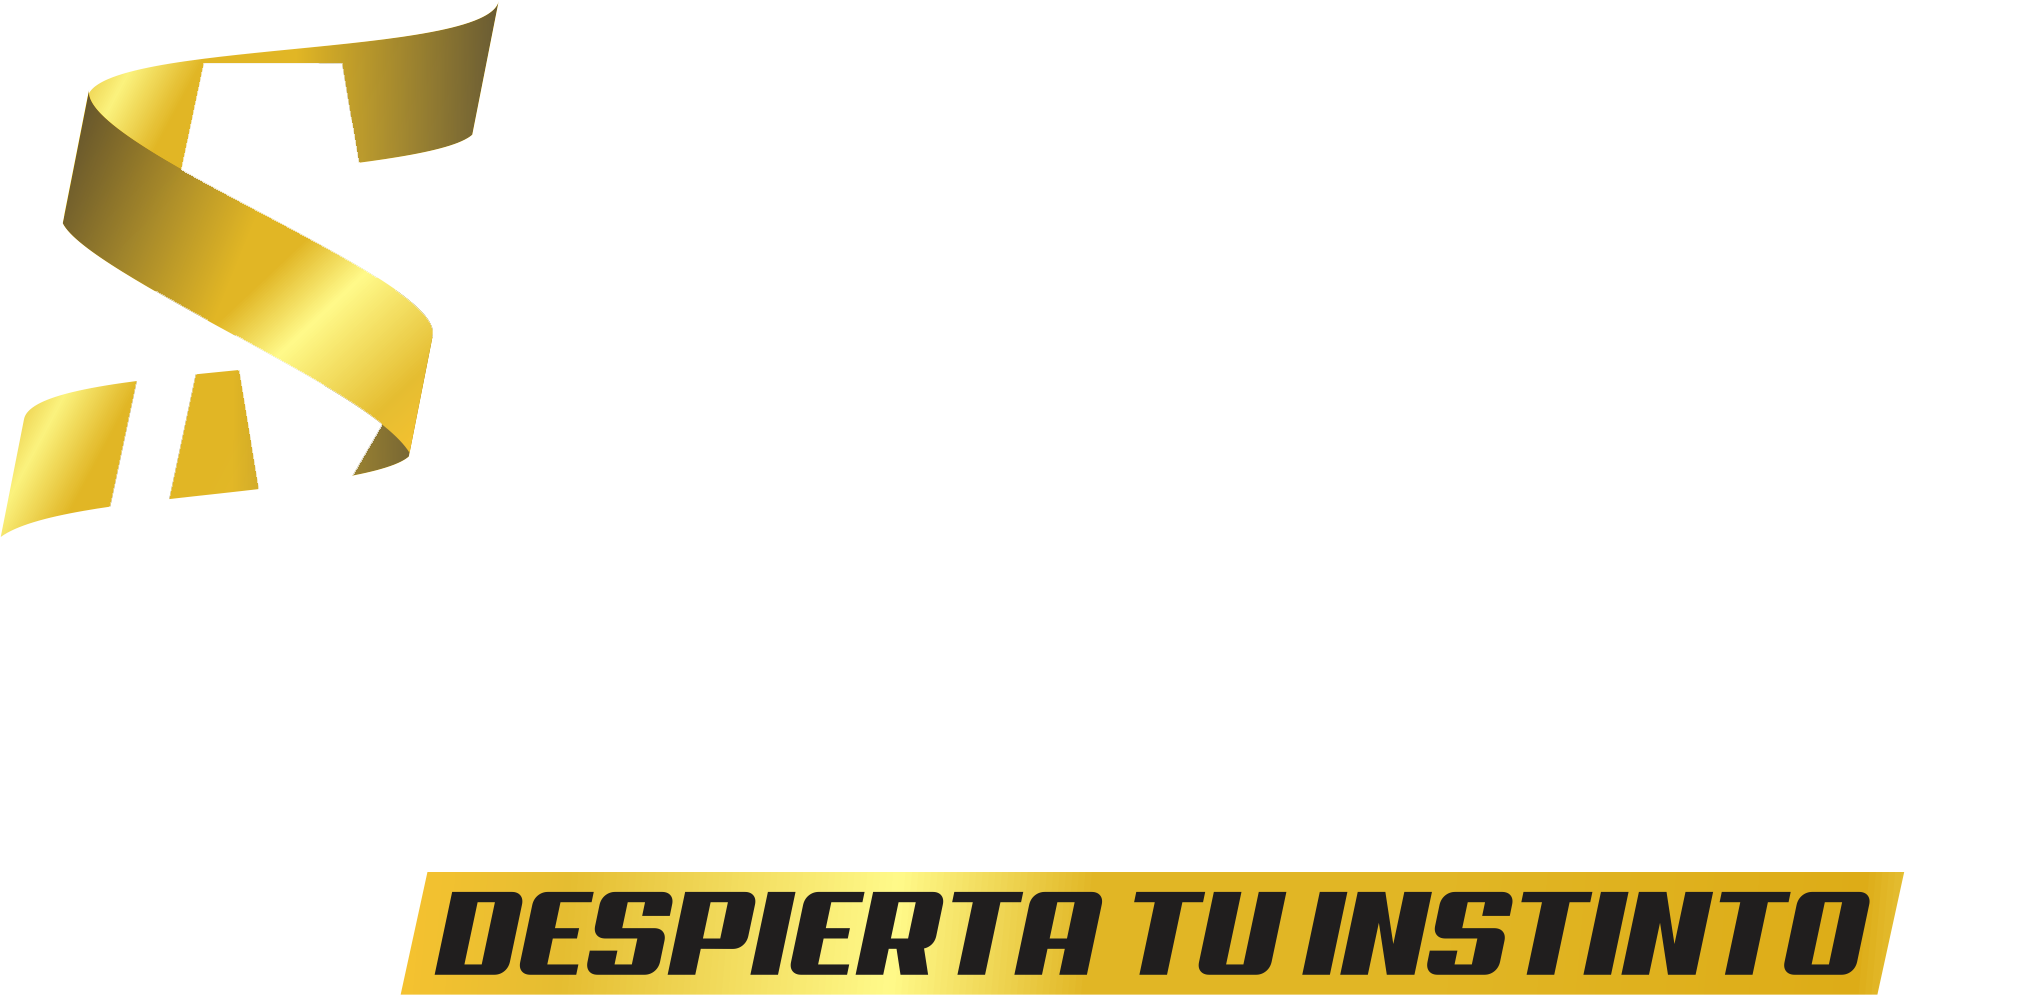 MASS PROTEINS es una empresa dedicada a la elaboración de        productos de línea deportiva como proteínas y quemadores de grasa, fabricadas con las mejores materias primas importadas y los más altos estándares de calidad.